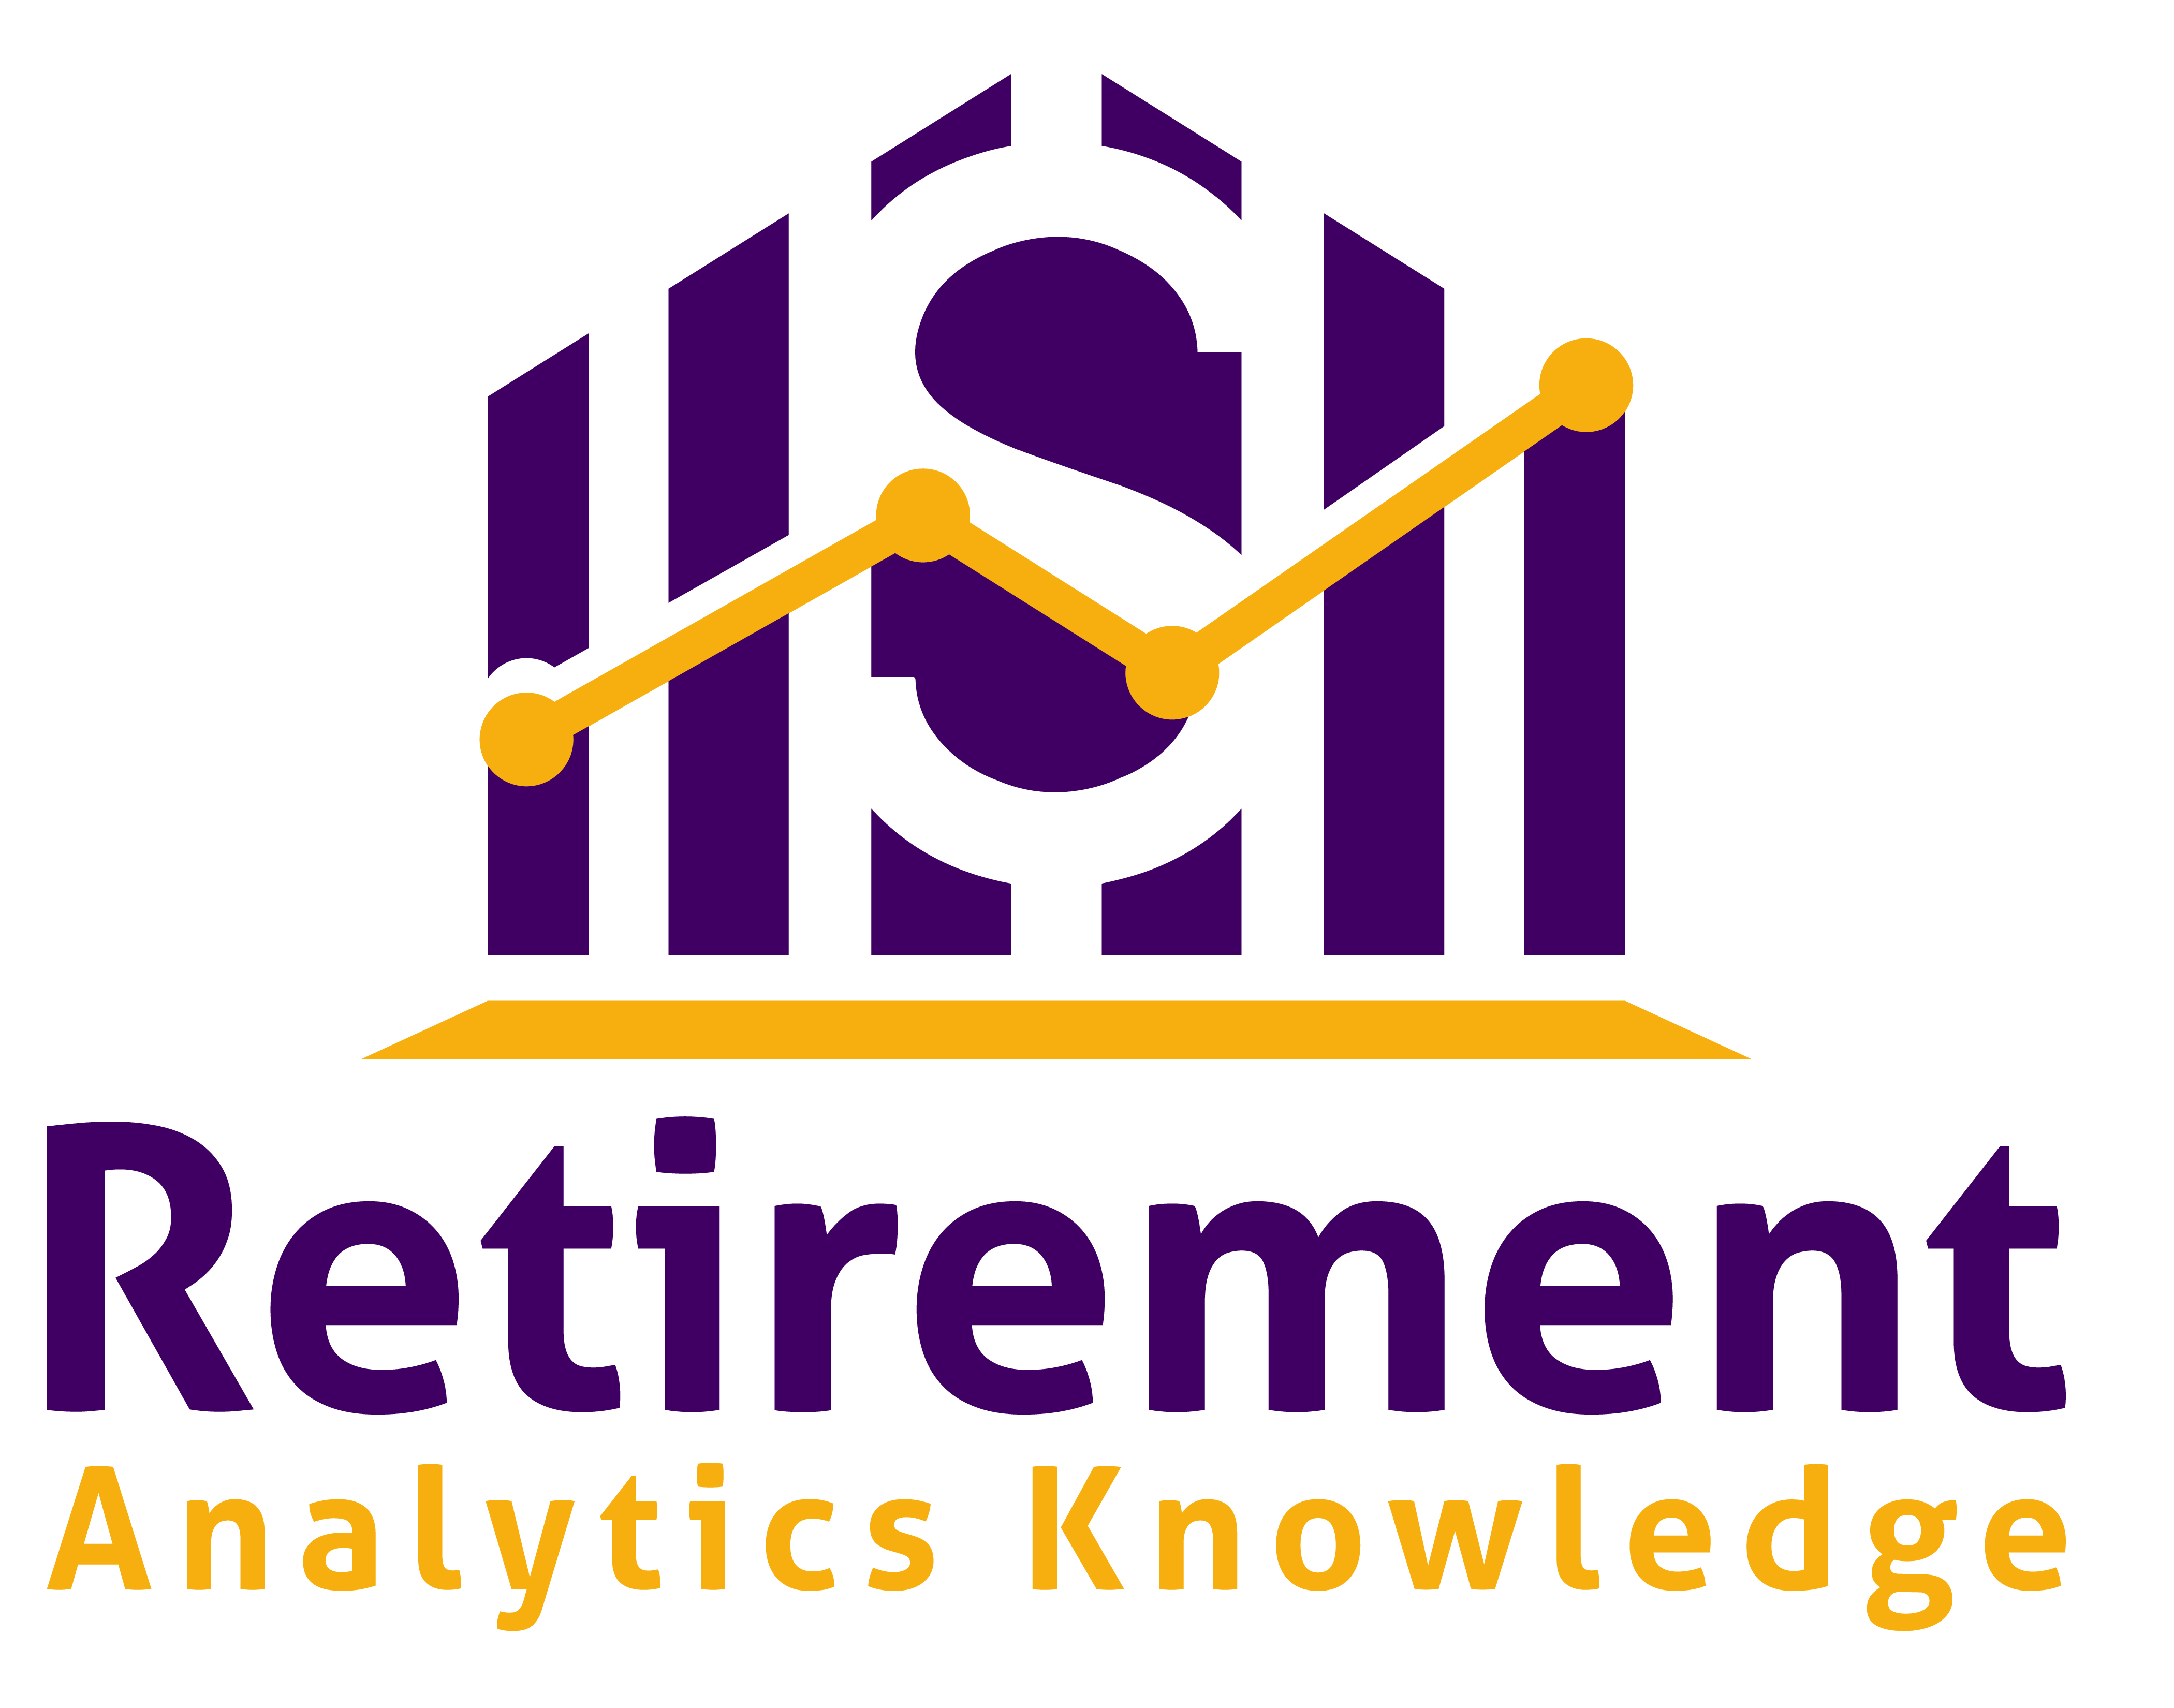 Retirement Analytics Knowledge